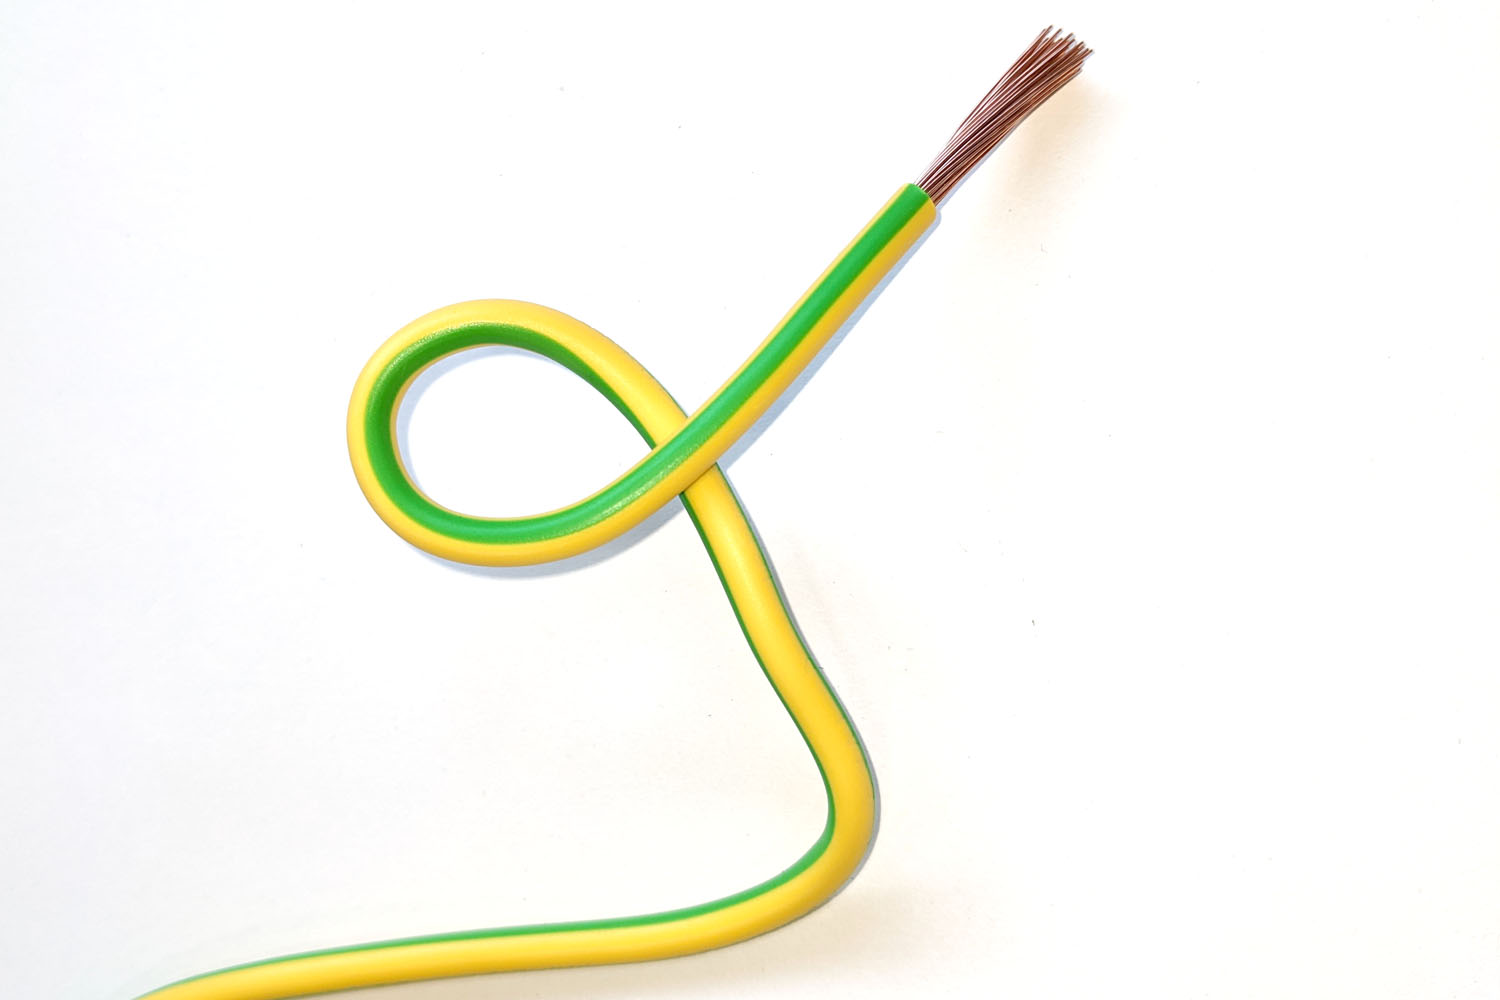 fil electrique vert et jaune pour mise à la terre